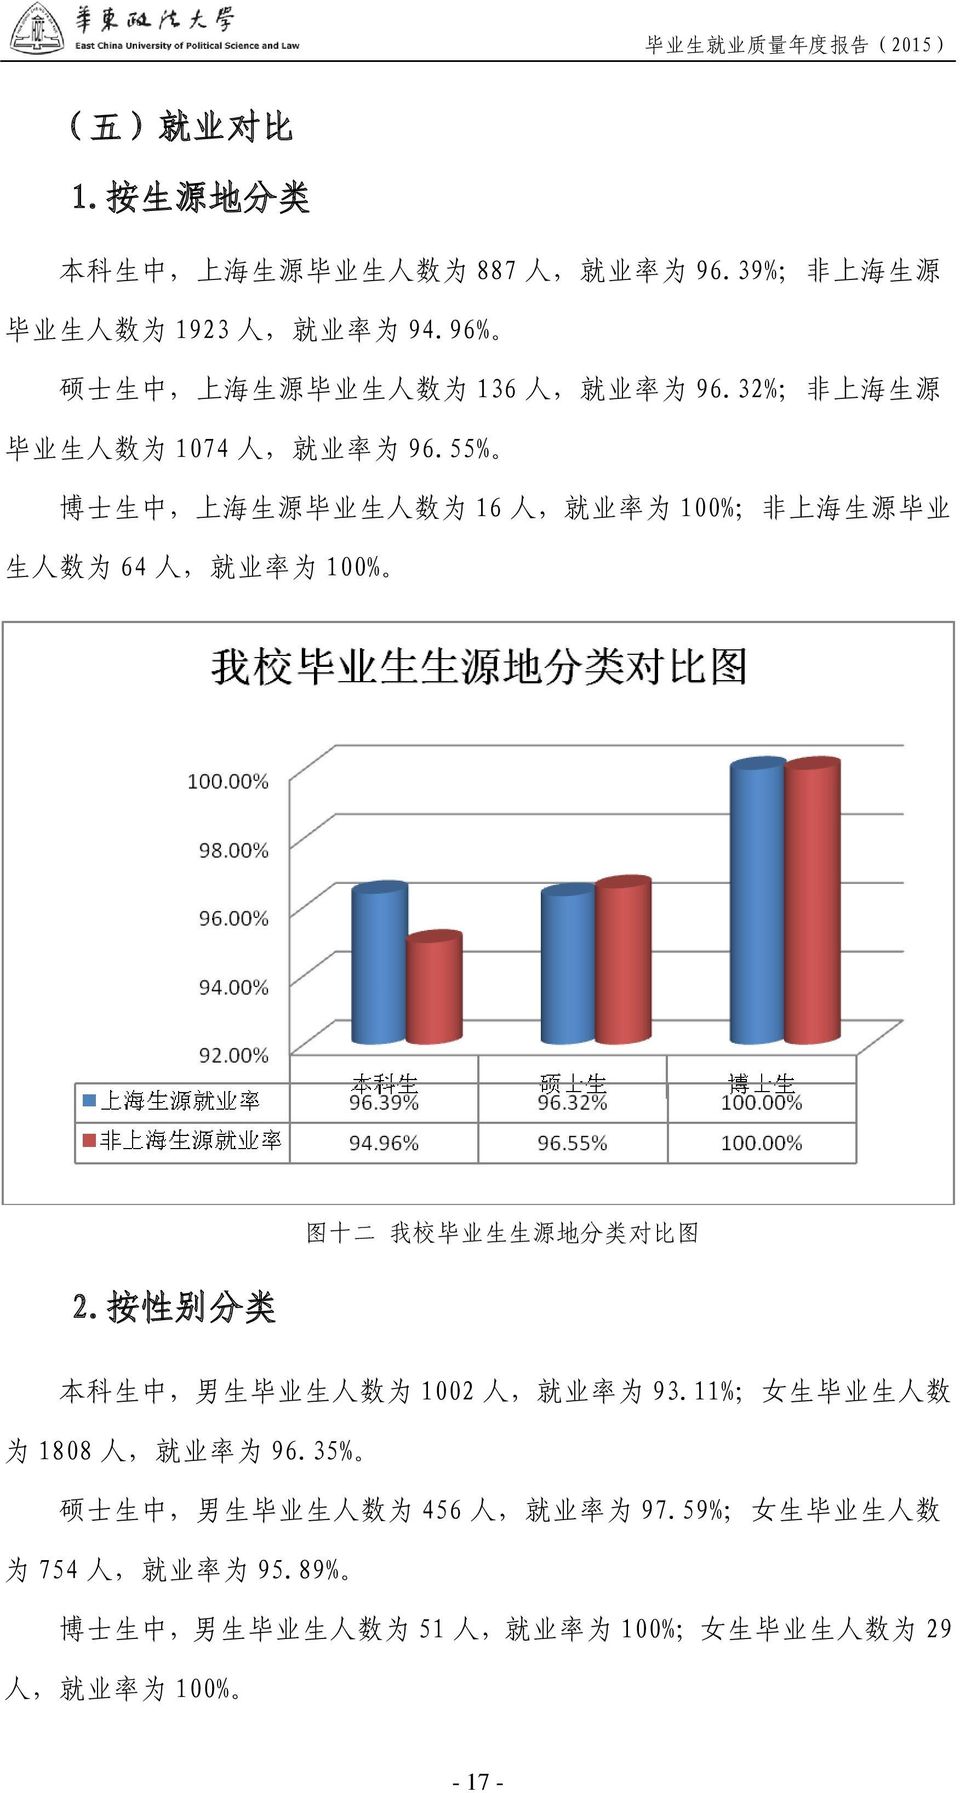 55% 博 士 生 中, 上 海 生 源 毕 业 生 人 数 为 16 人, 就 业 率 为 100%; 非 上 海 生 源 毕 业 生 人 数 为 64 人, 就 业 率 为 100% 2.